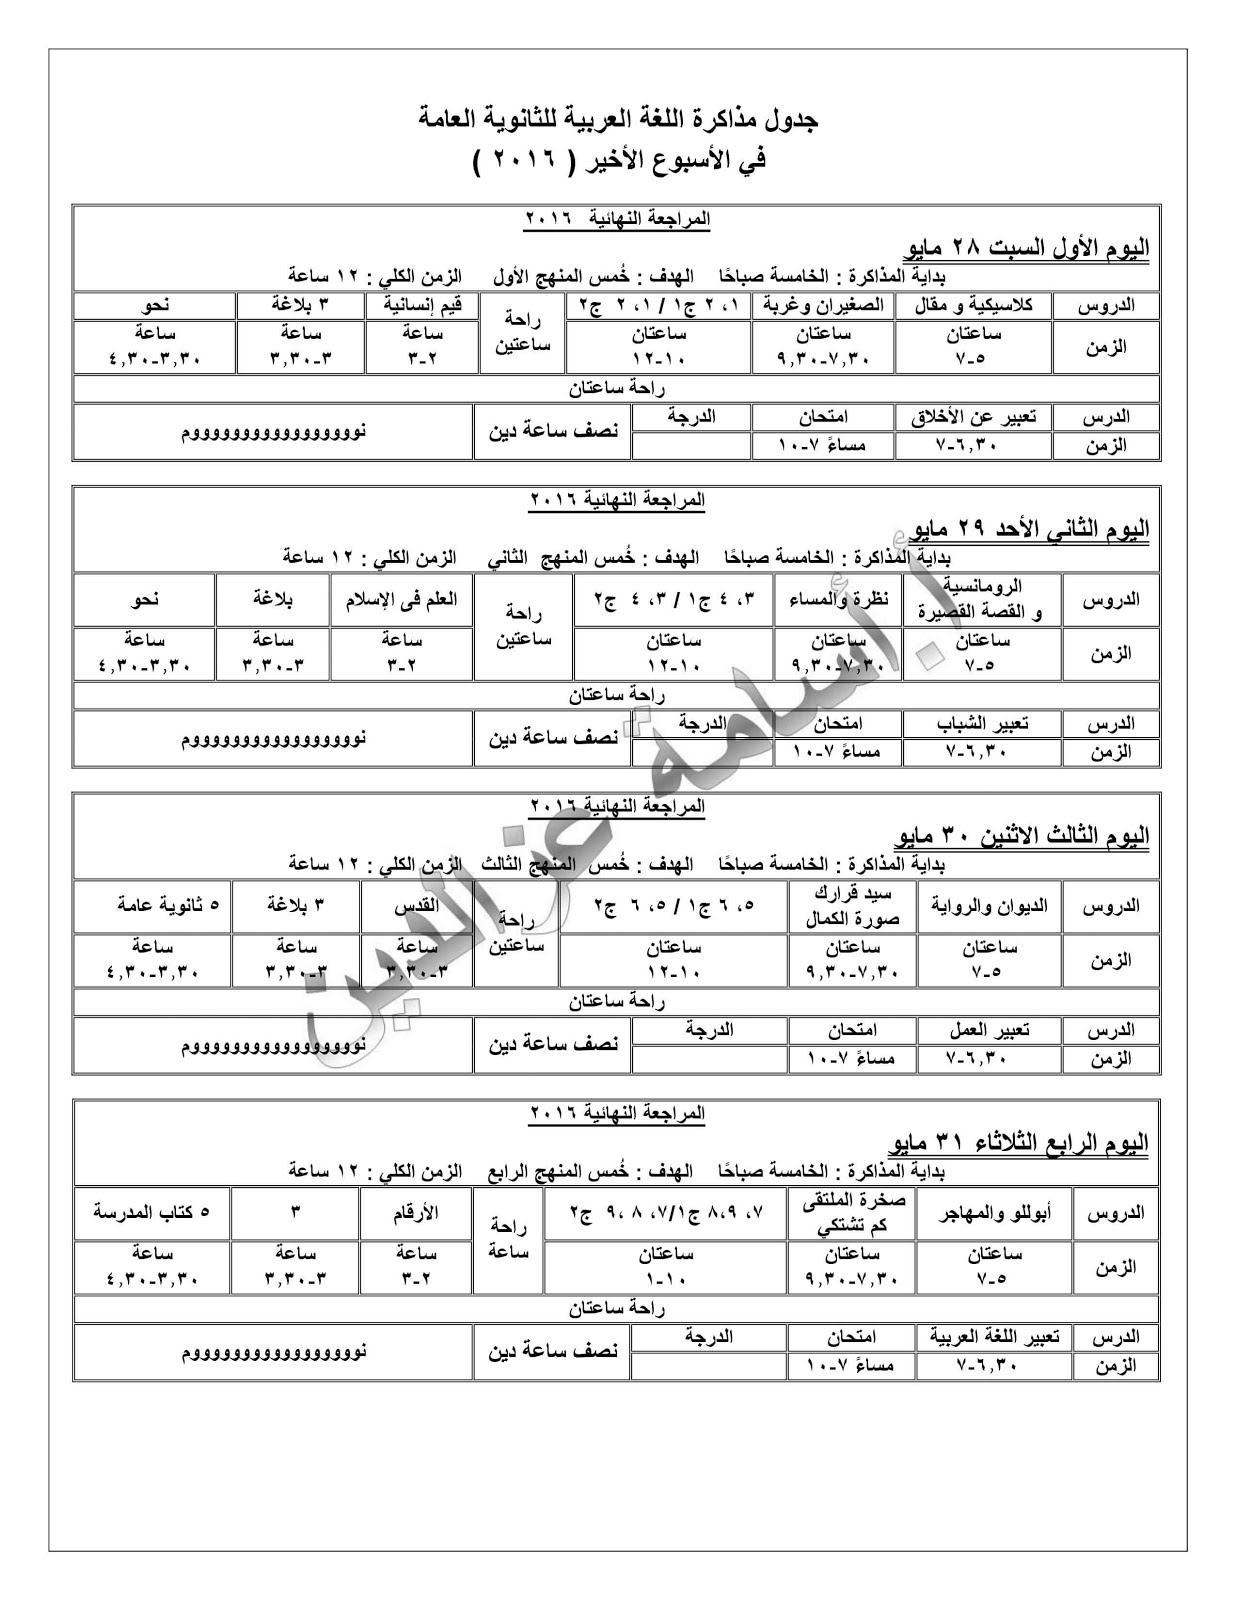 جدول مذاكرة اللغة العربية في الأسبوع الأخير للثانوية العامة